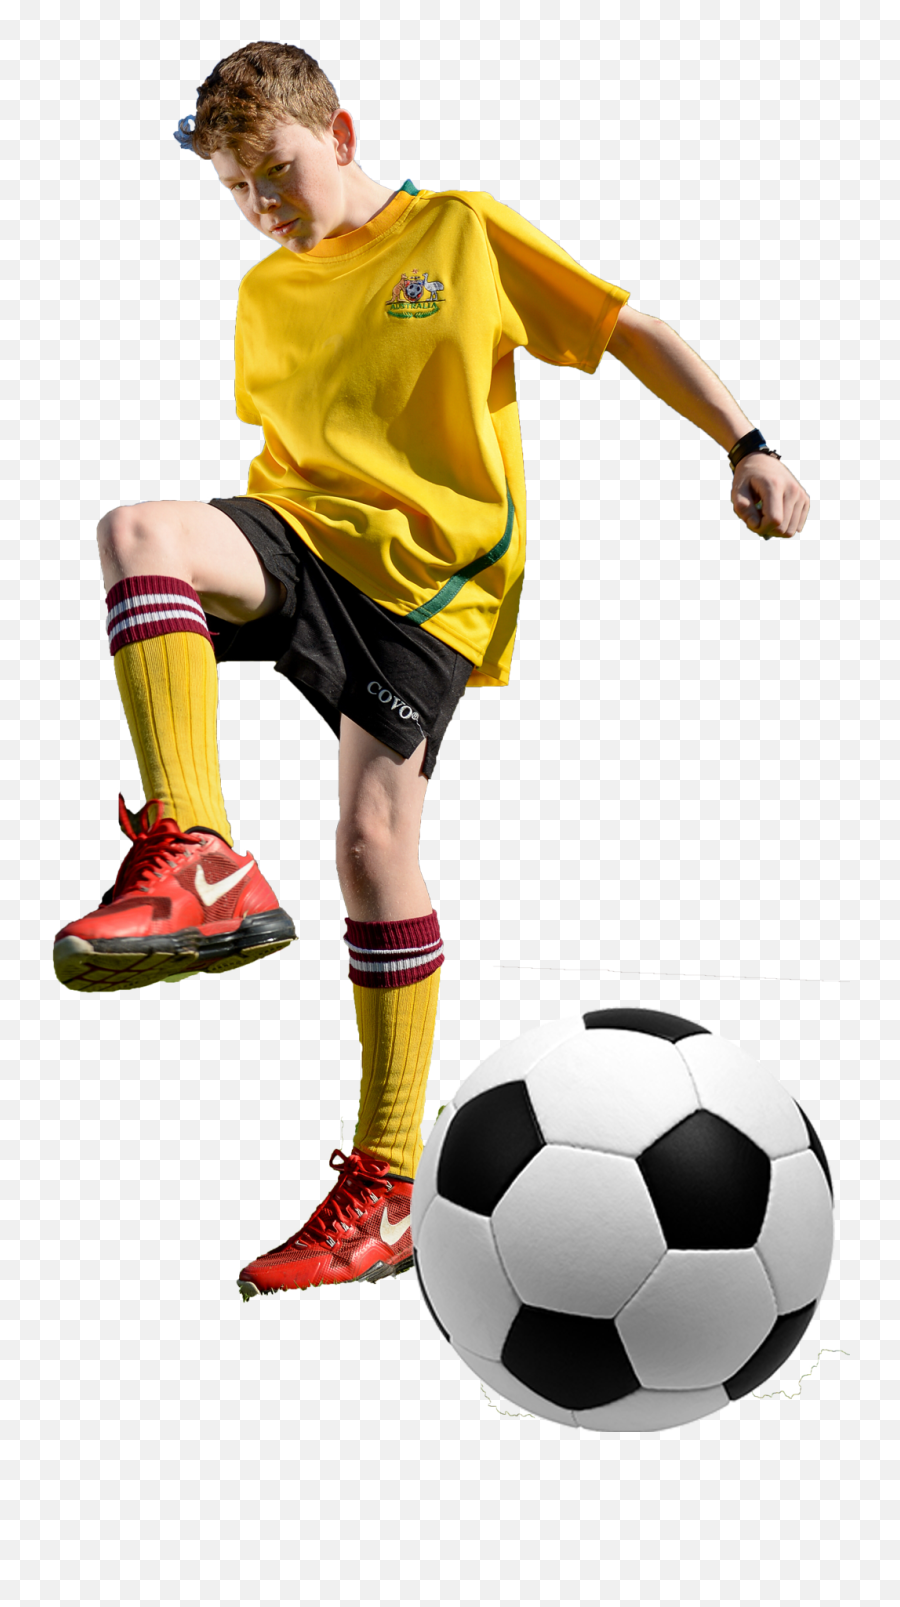 Download Soccer Pass - Football Junior Player Png Full Soccer Transparent,Football Player Png